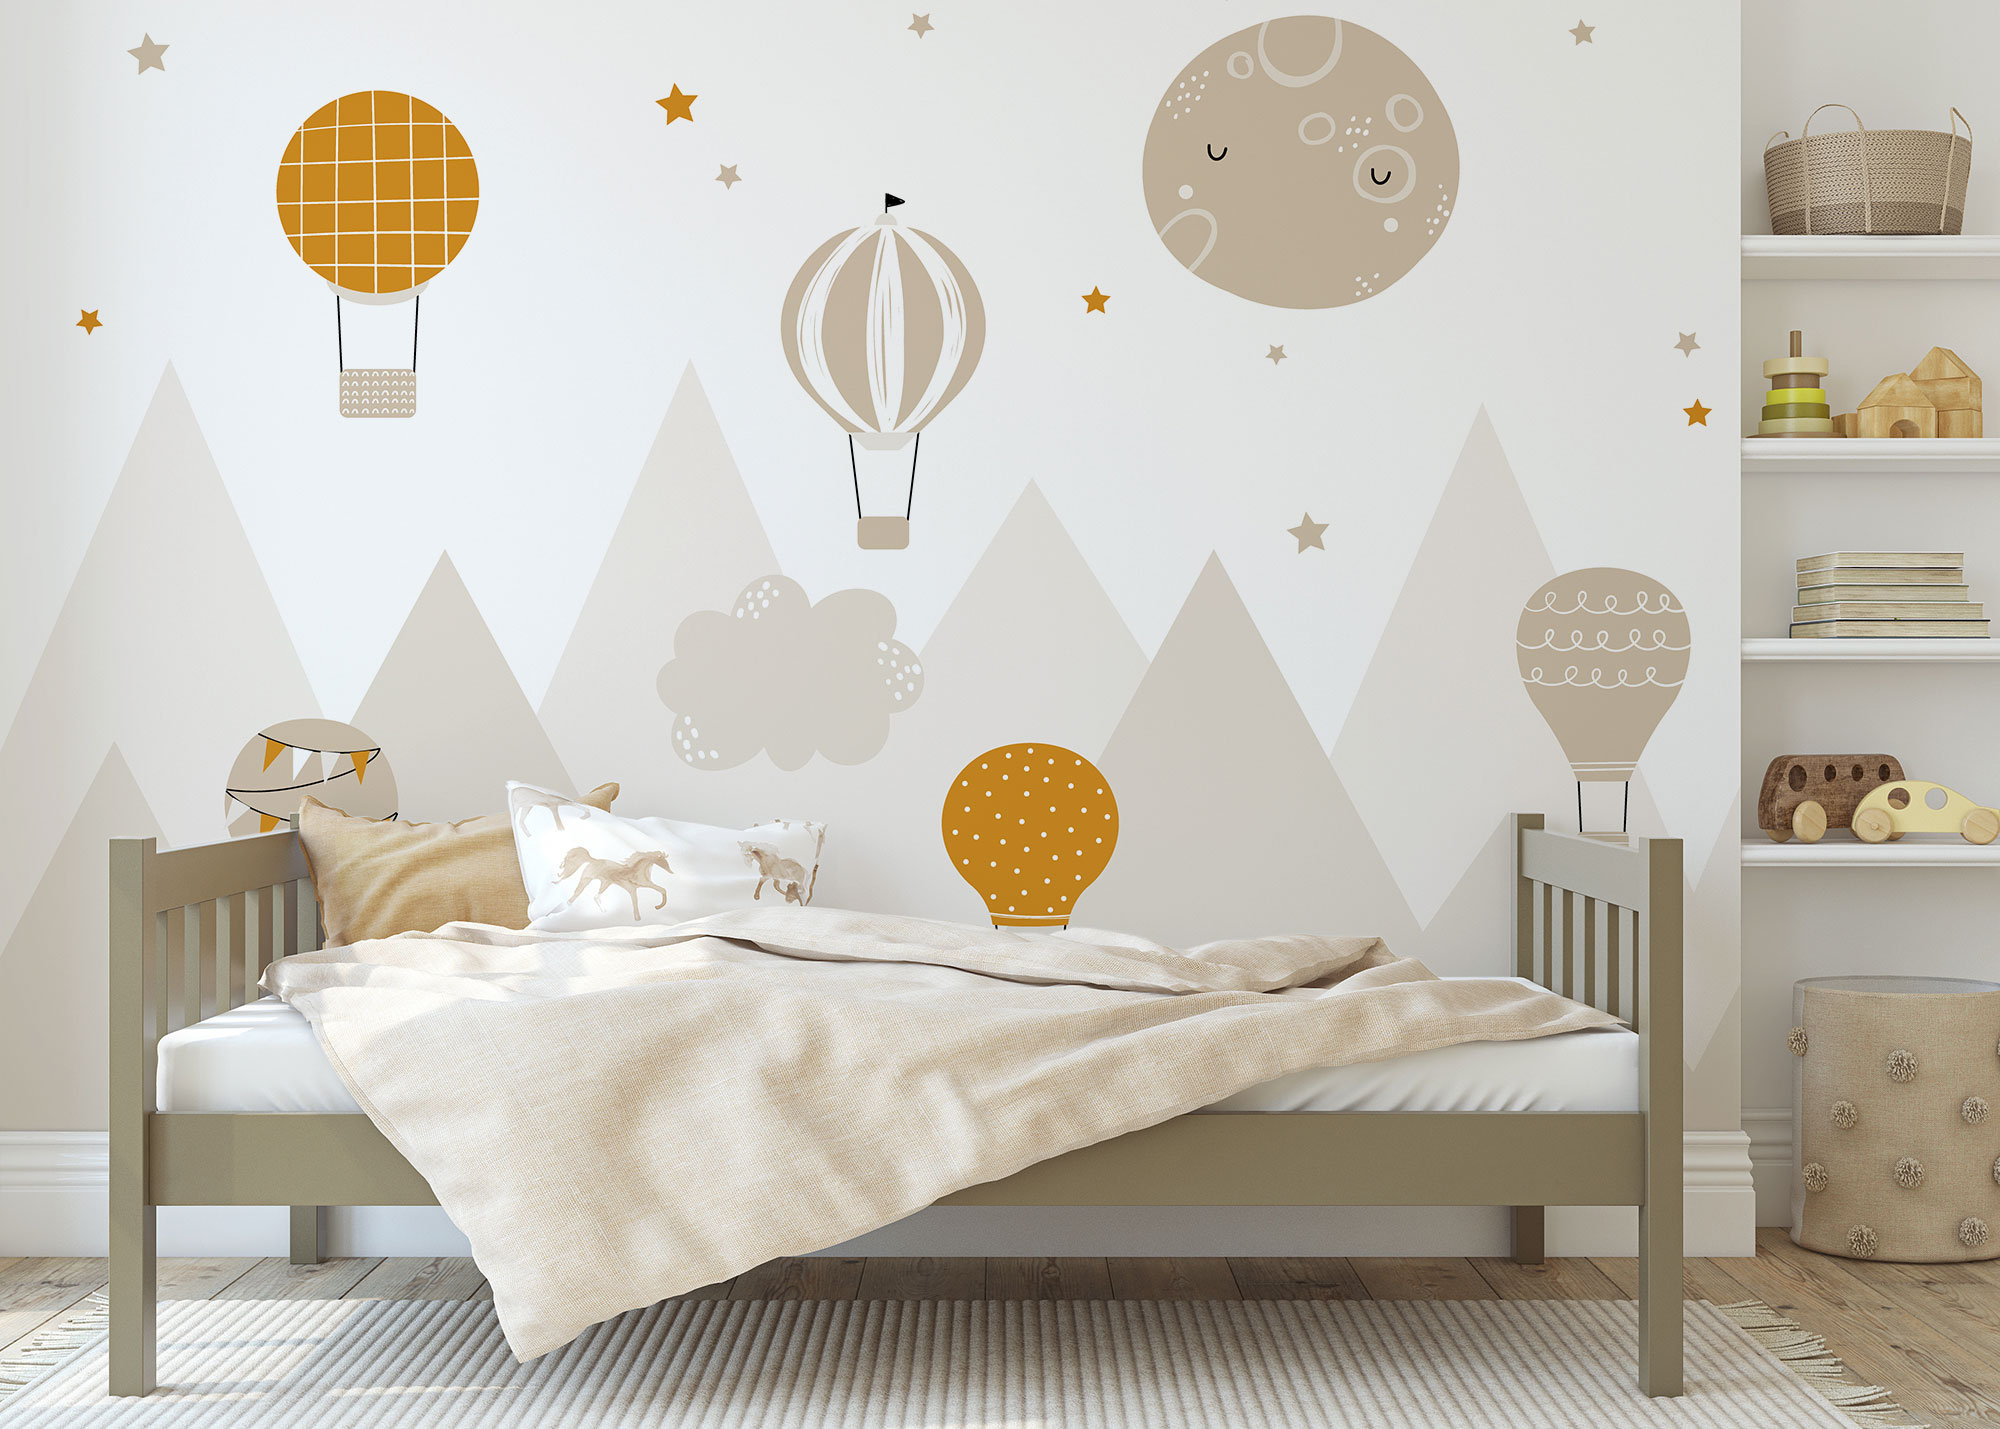 Nursery PeelandStick Wallpaper  Cute Wallpaper Designs  Project Nursery